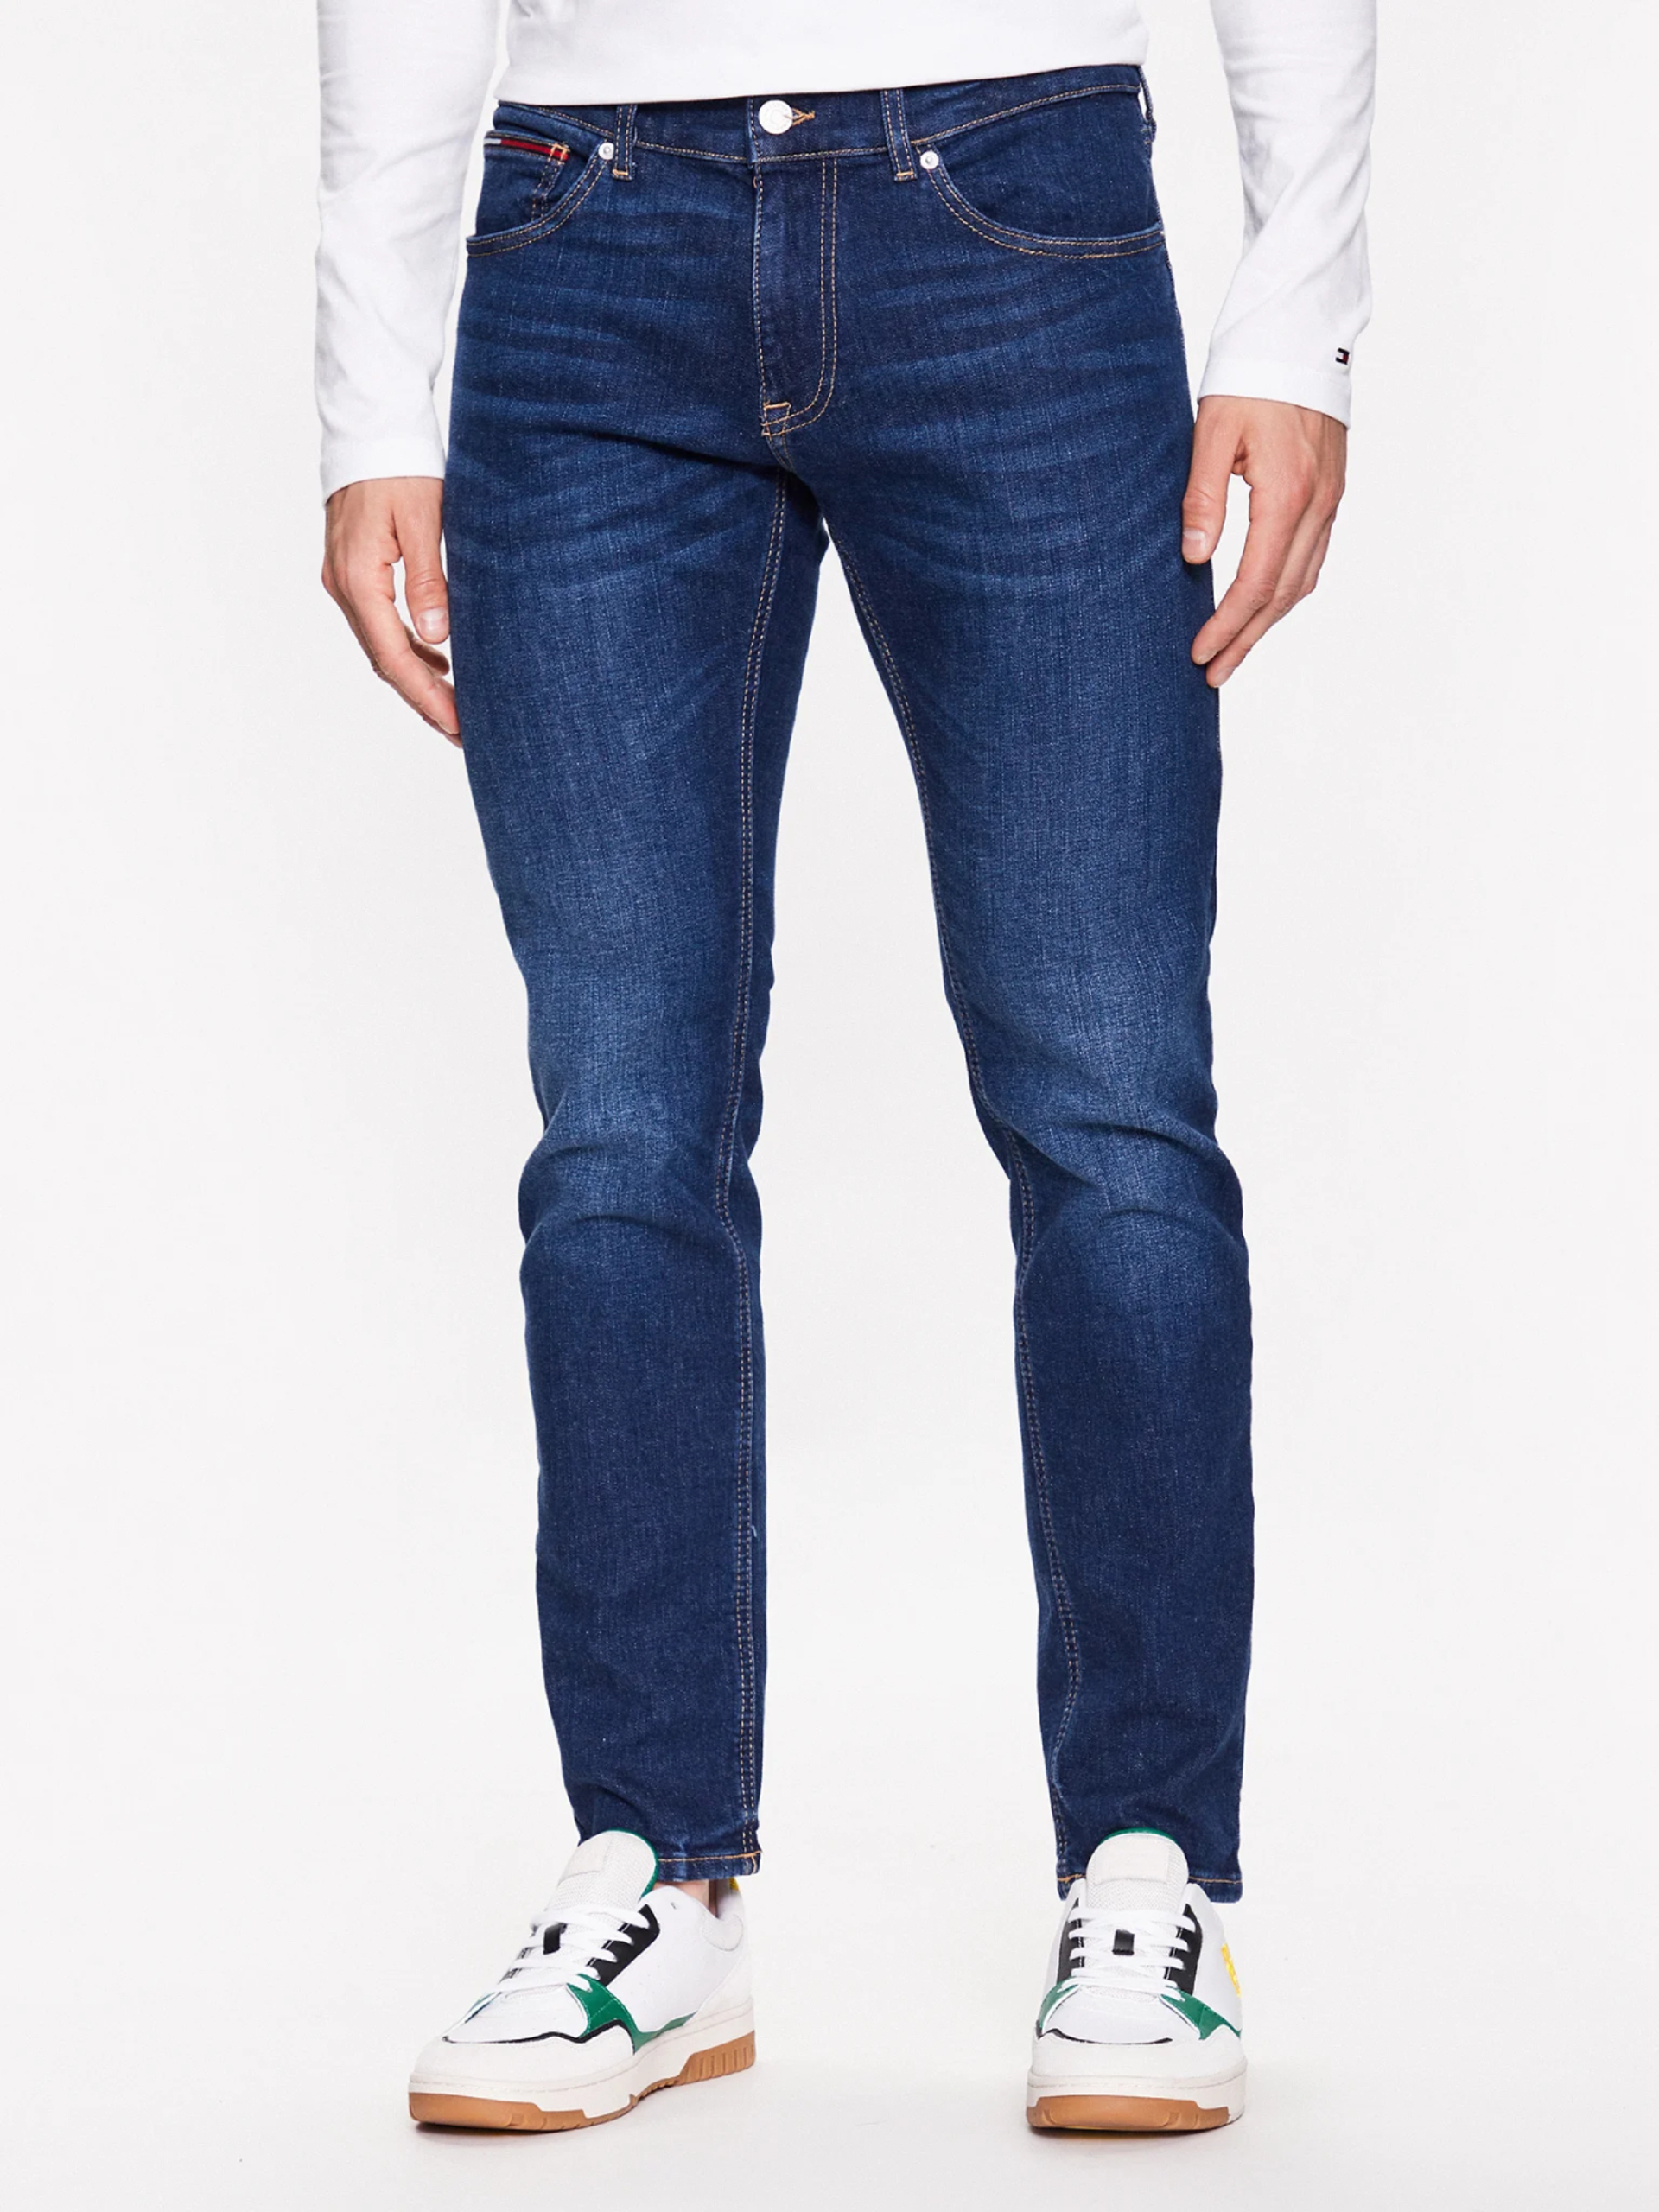 Tommy Jeans pánské modré džíny Scanton - 31/32 (1BK)